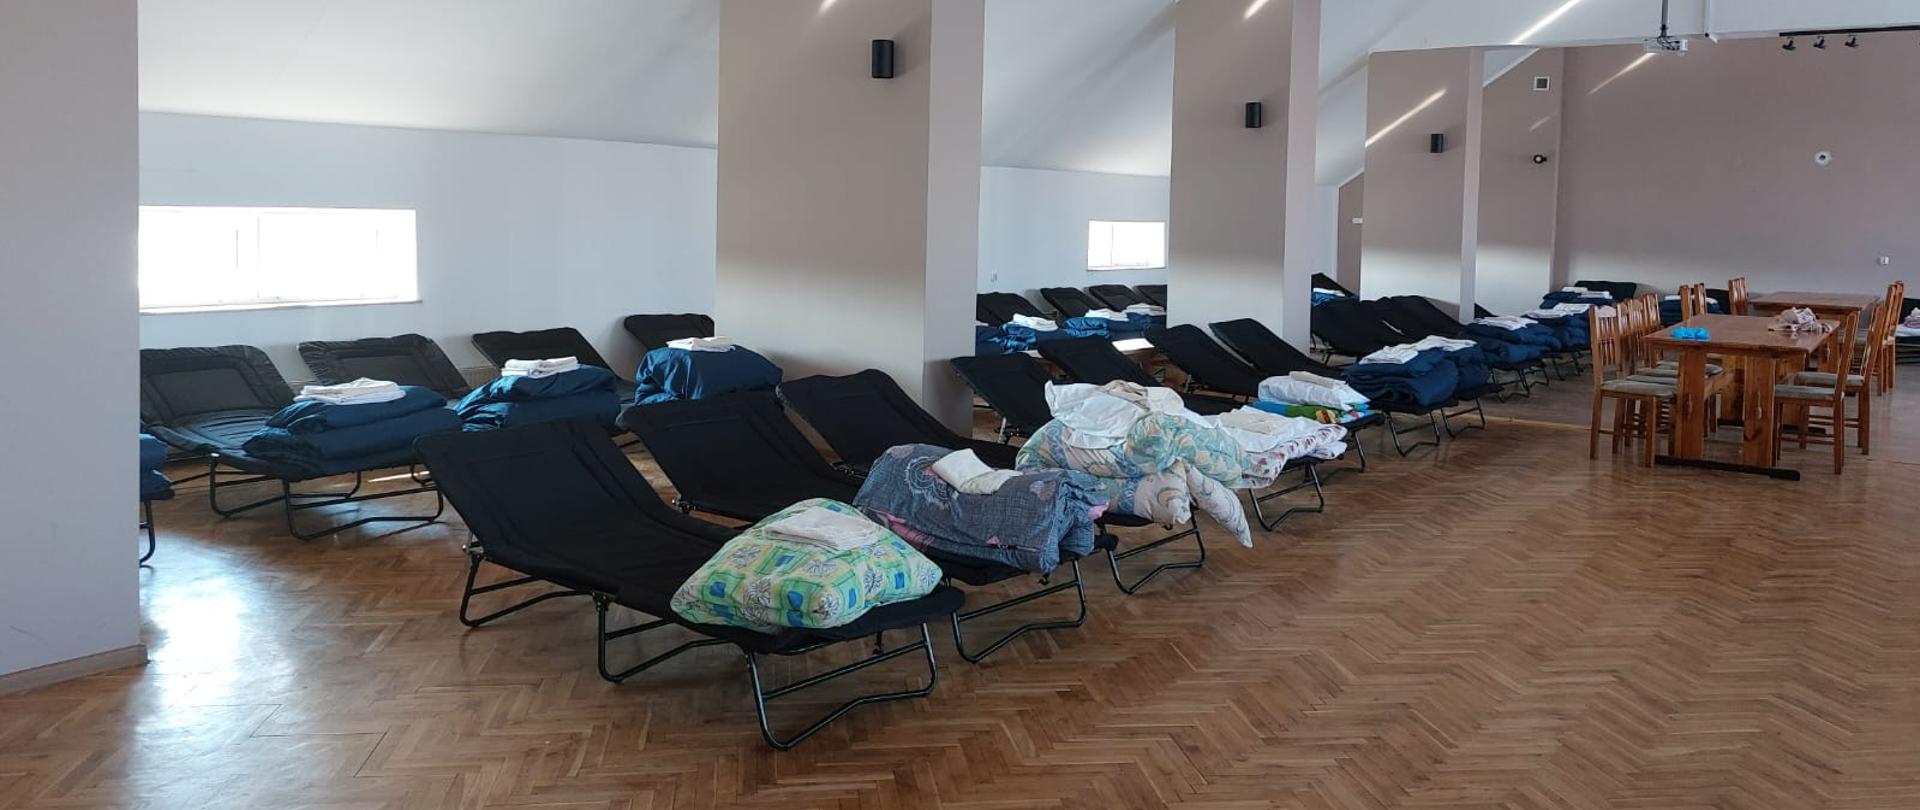 Zdjęcie wykonane w jednym z pomieszczeń wewnątrz strażnicy Ochotniczej Straży Pożarnej w Jastrzębi. Na zdjęciu widać poustawiane w dwóch rzędach, przygotowane do spania miejsca dla uchodźców z Ukrainy. Na łóżkach znajduje się kolorowa pościel. 